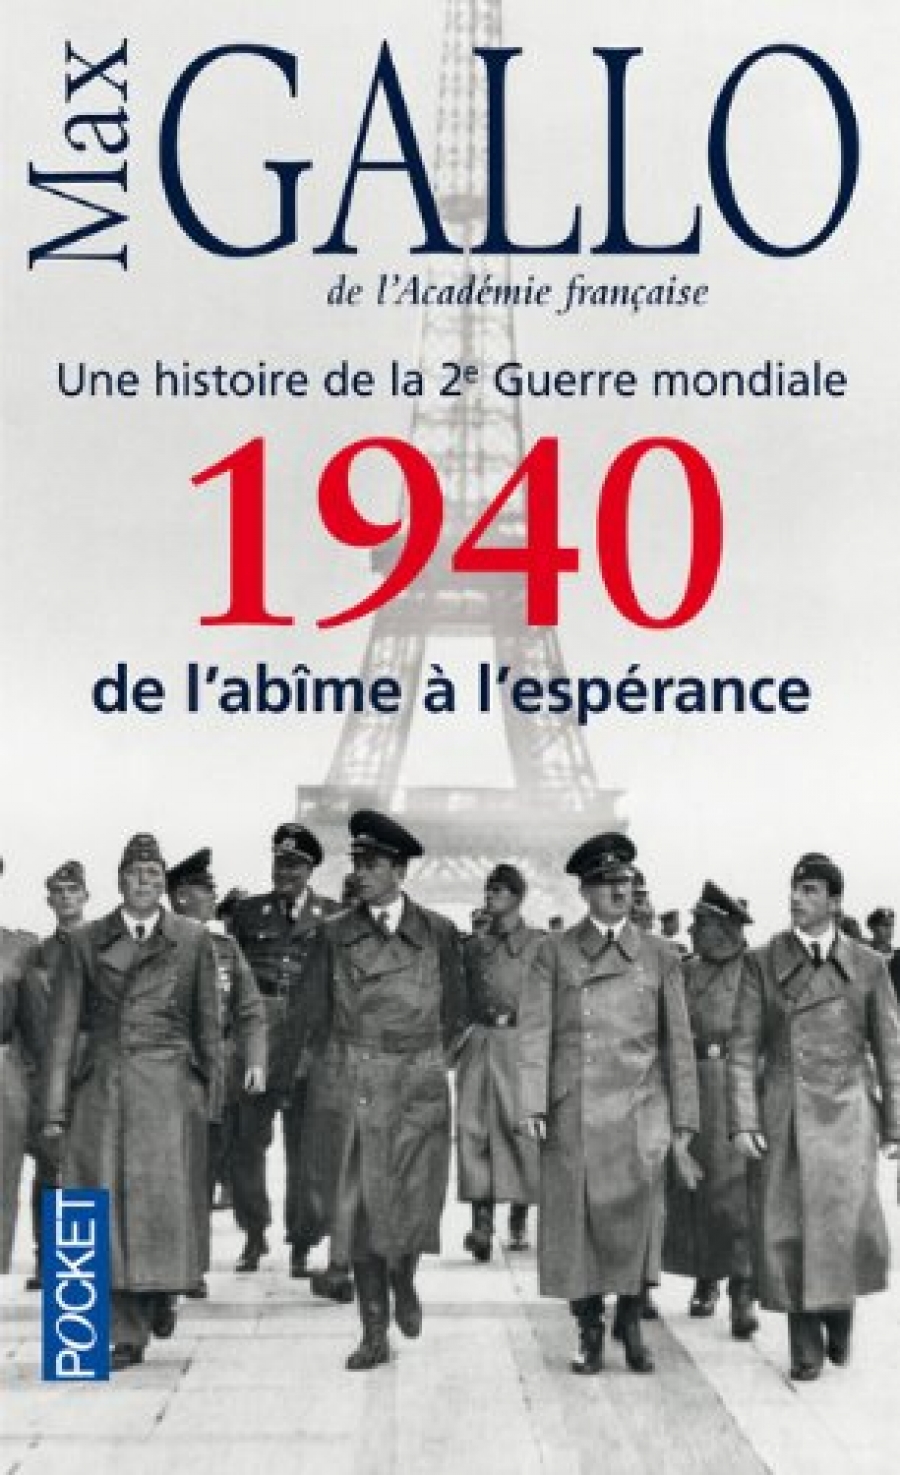 Gallo, Max 1940, de l'abime a l'esperance: Histoire de la 2de Guerre mondiale 